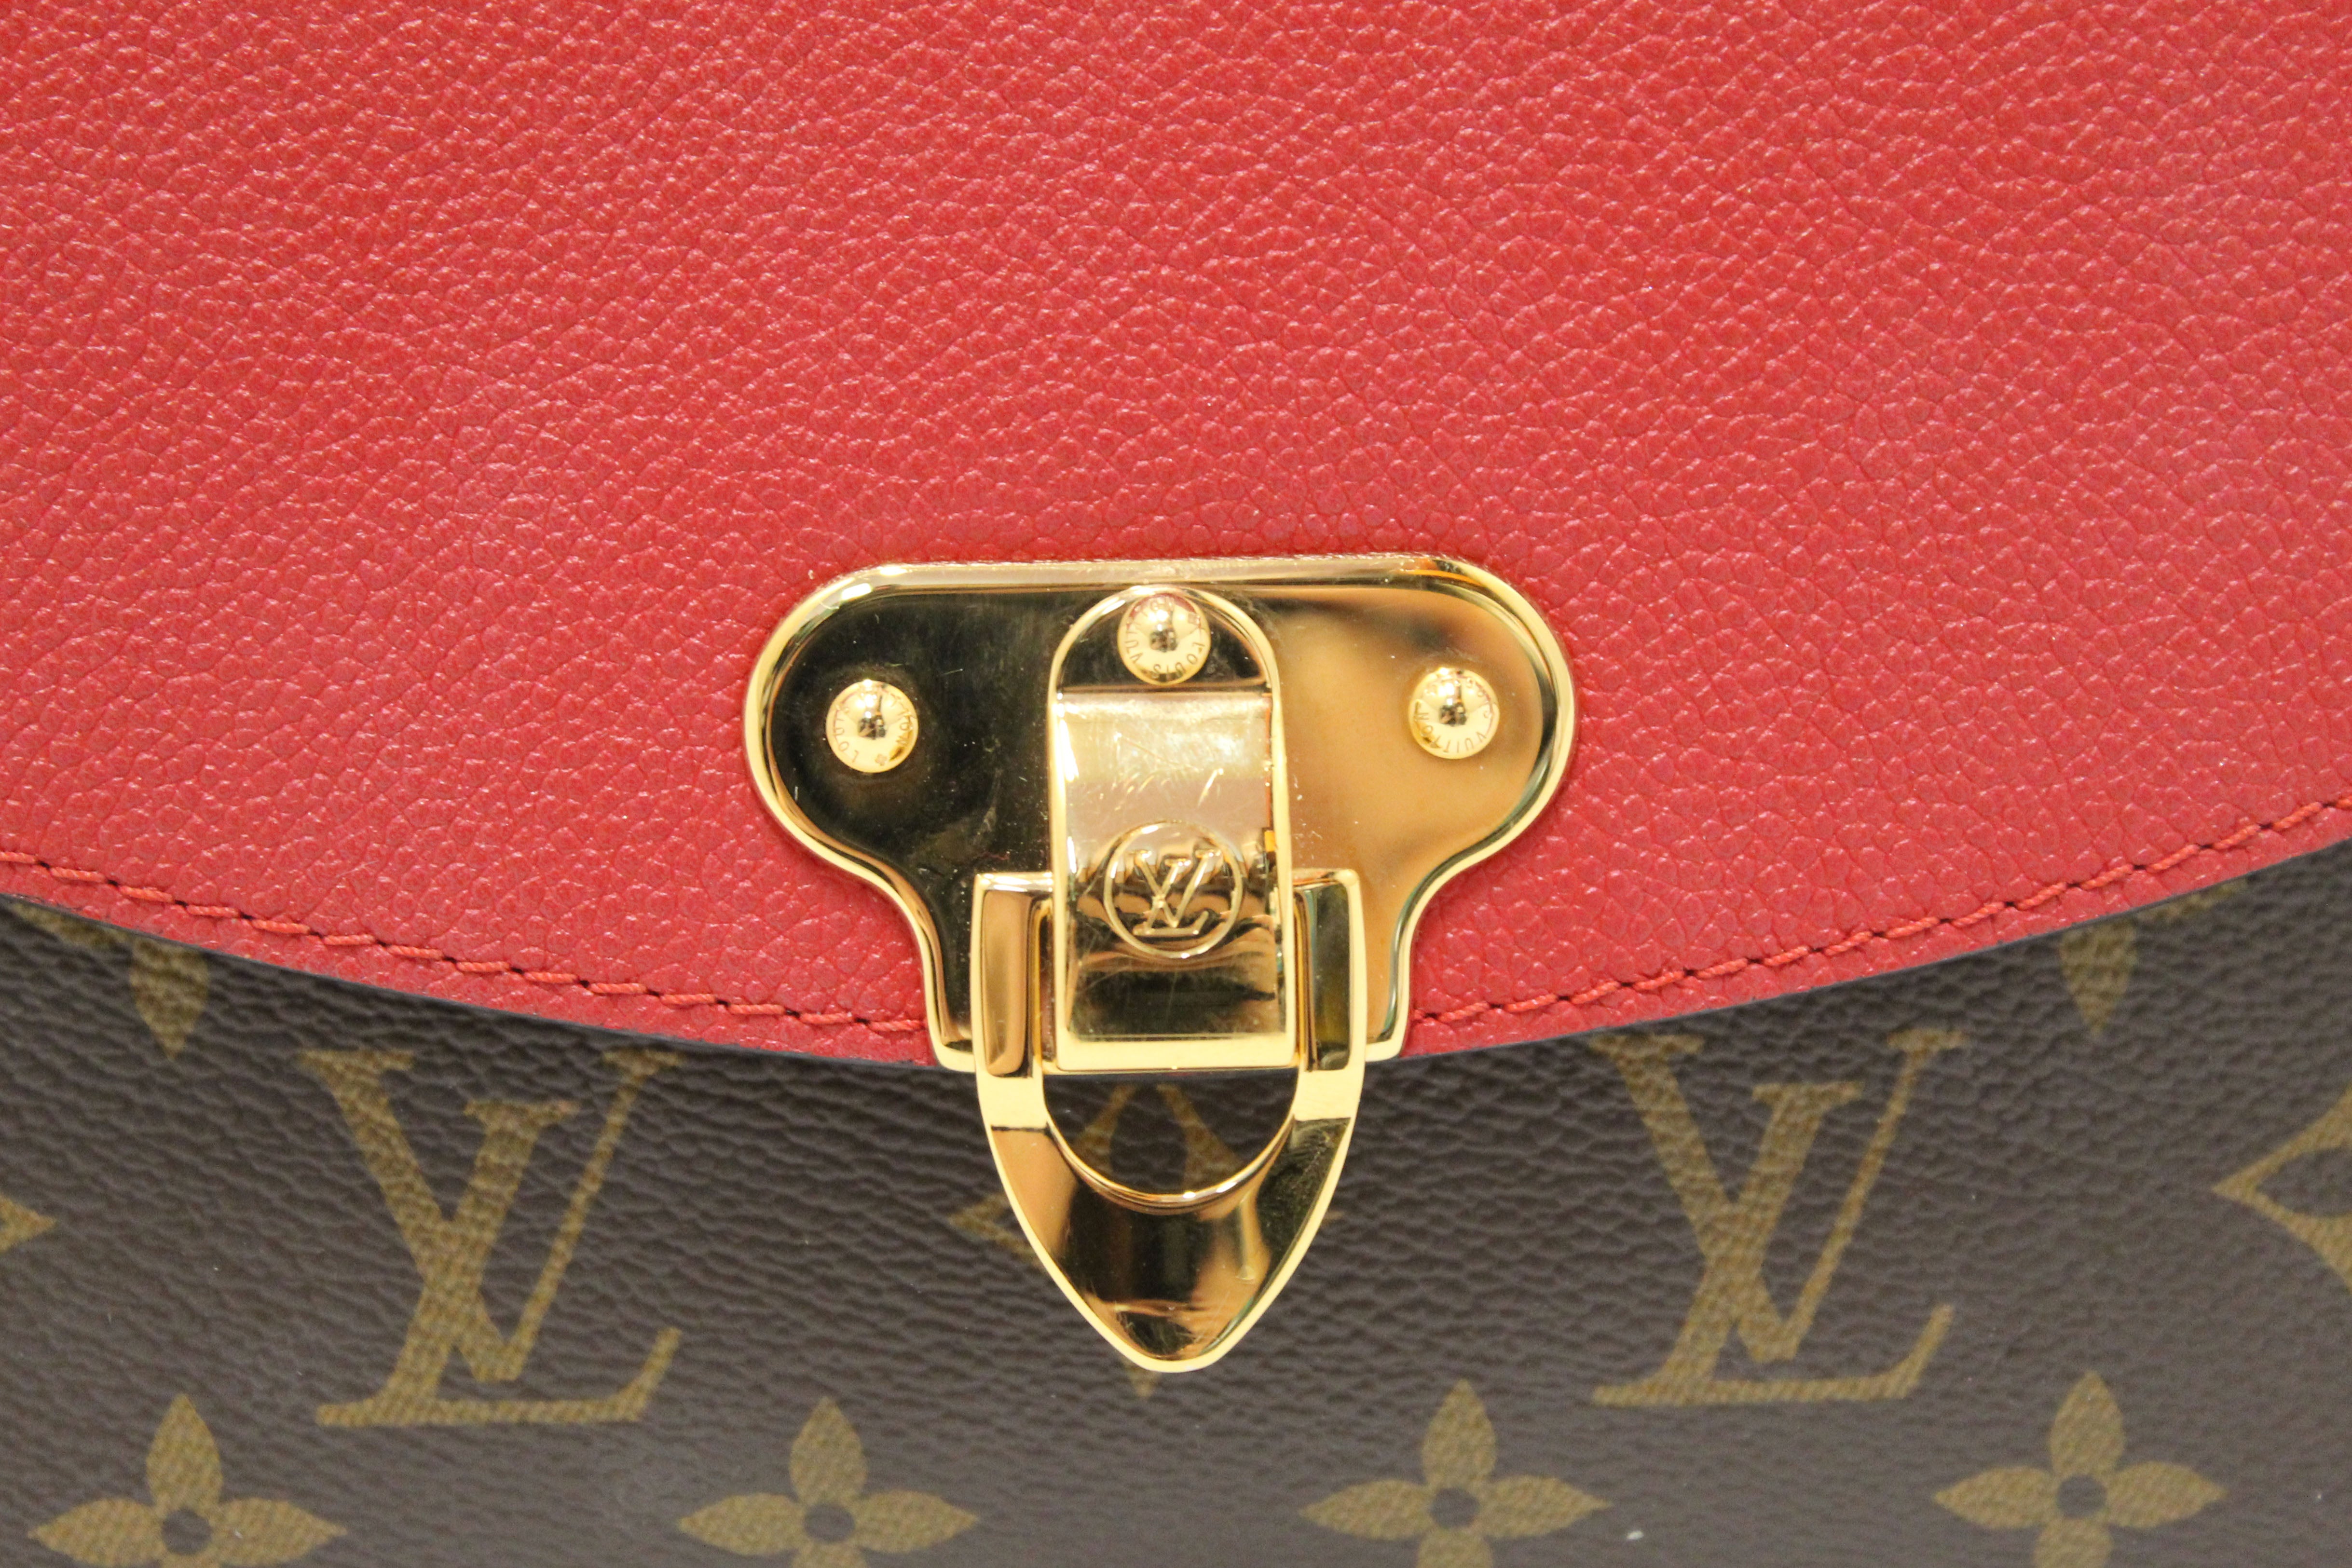 Louis Vuitton Cerise Monogram Canvas and Leather Saint Placide Bag Louis  Vuitton